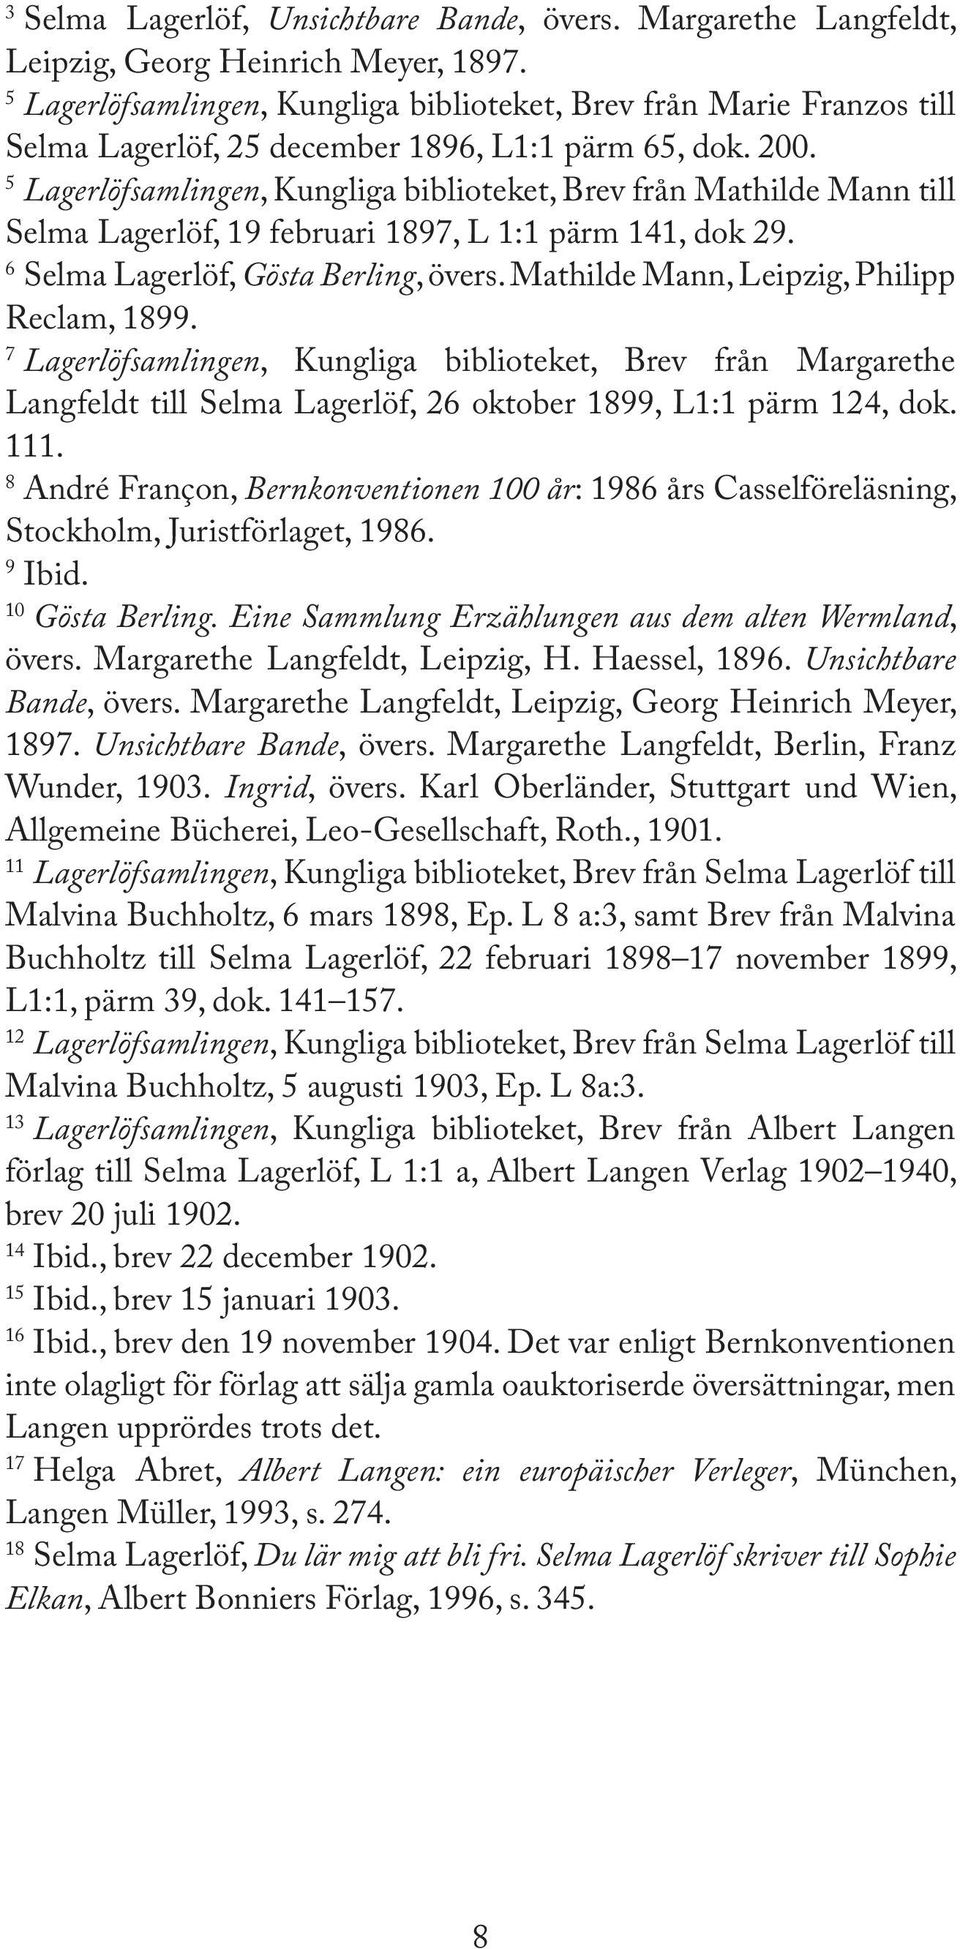 5 Lagerlöfsamlingen, Kungliga biblioteket, Brev från Mathilde Mann till Selma Lagerlöf, 19 februari 1897, L 1:1 pärm 141, dok 29. 6 Selma Lagerlöf, Gösta Berling, övers.